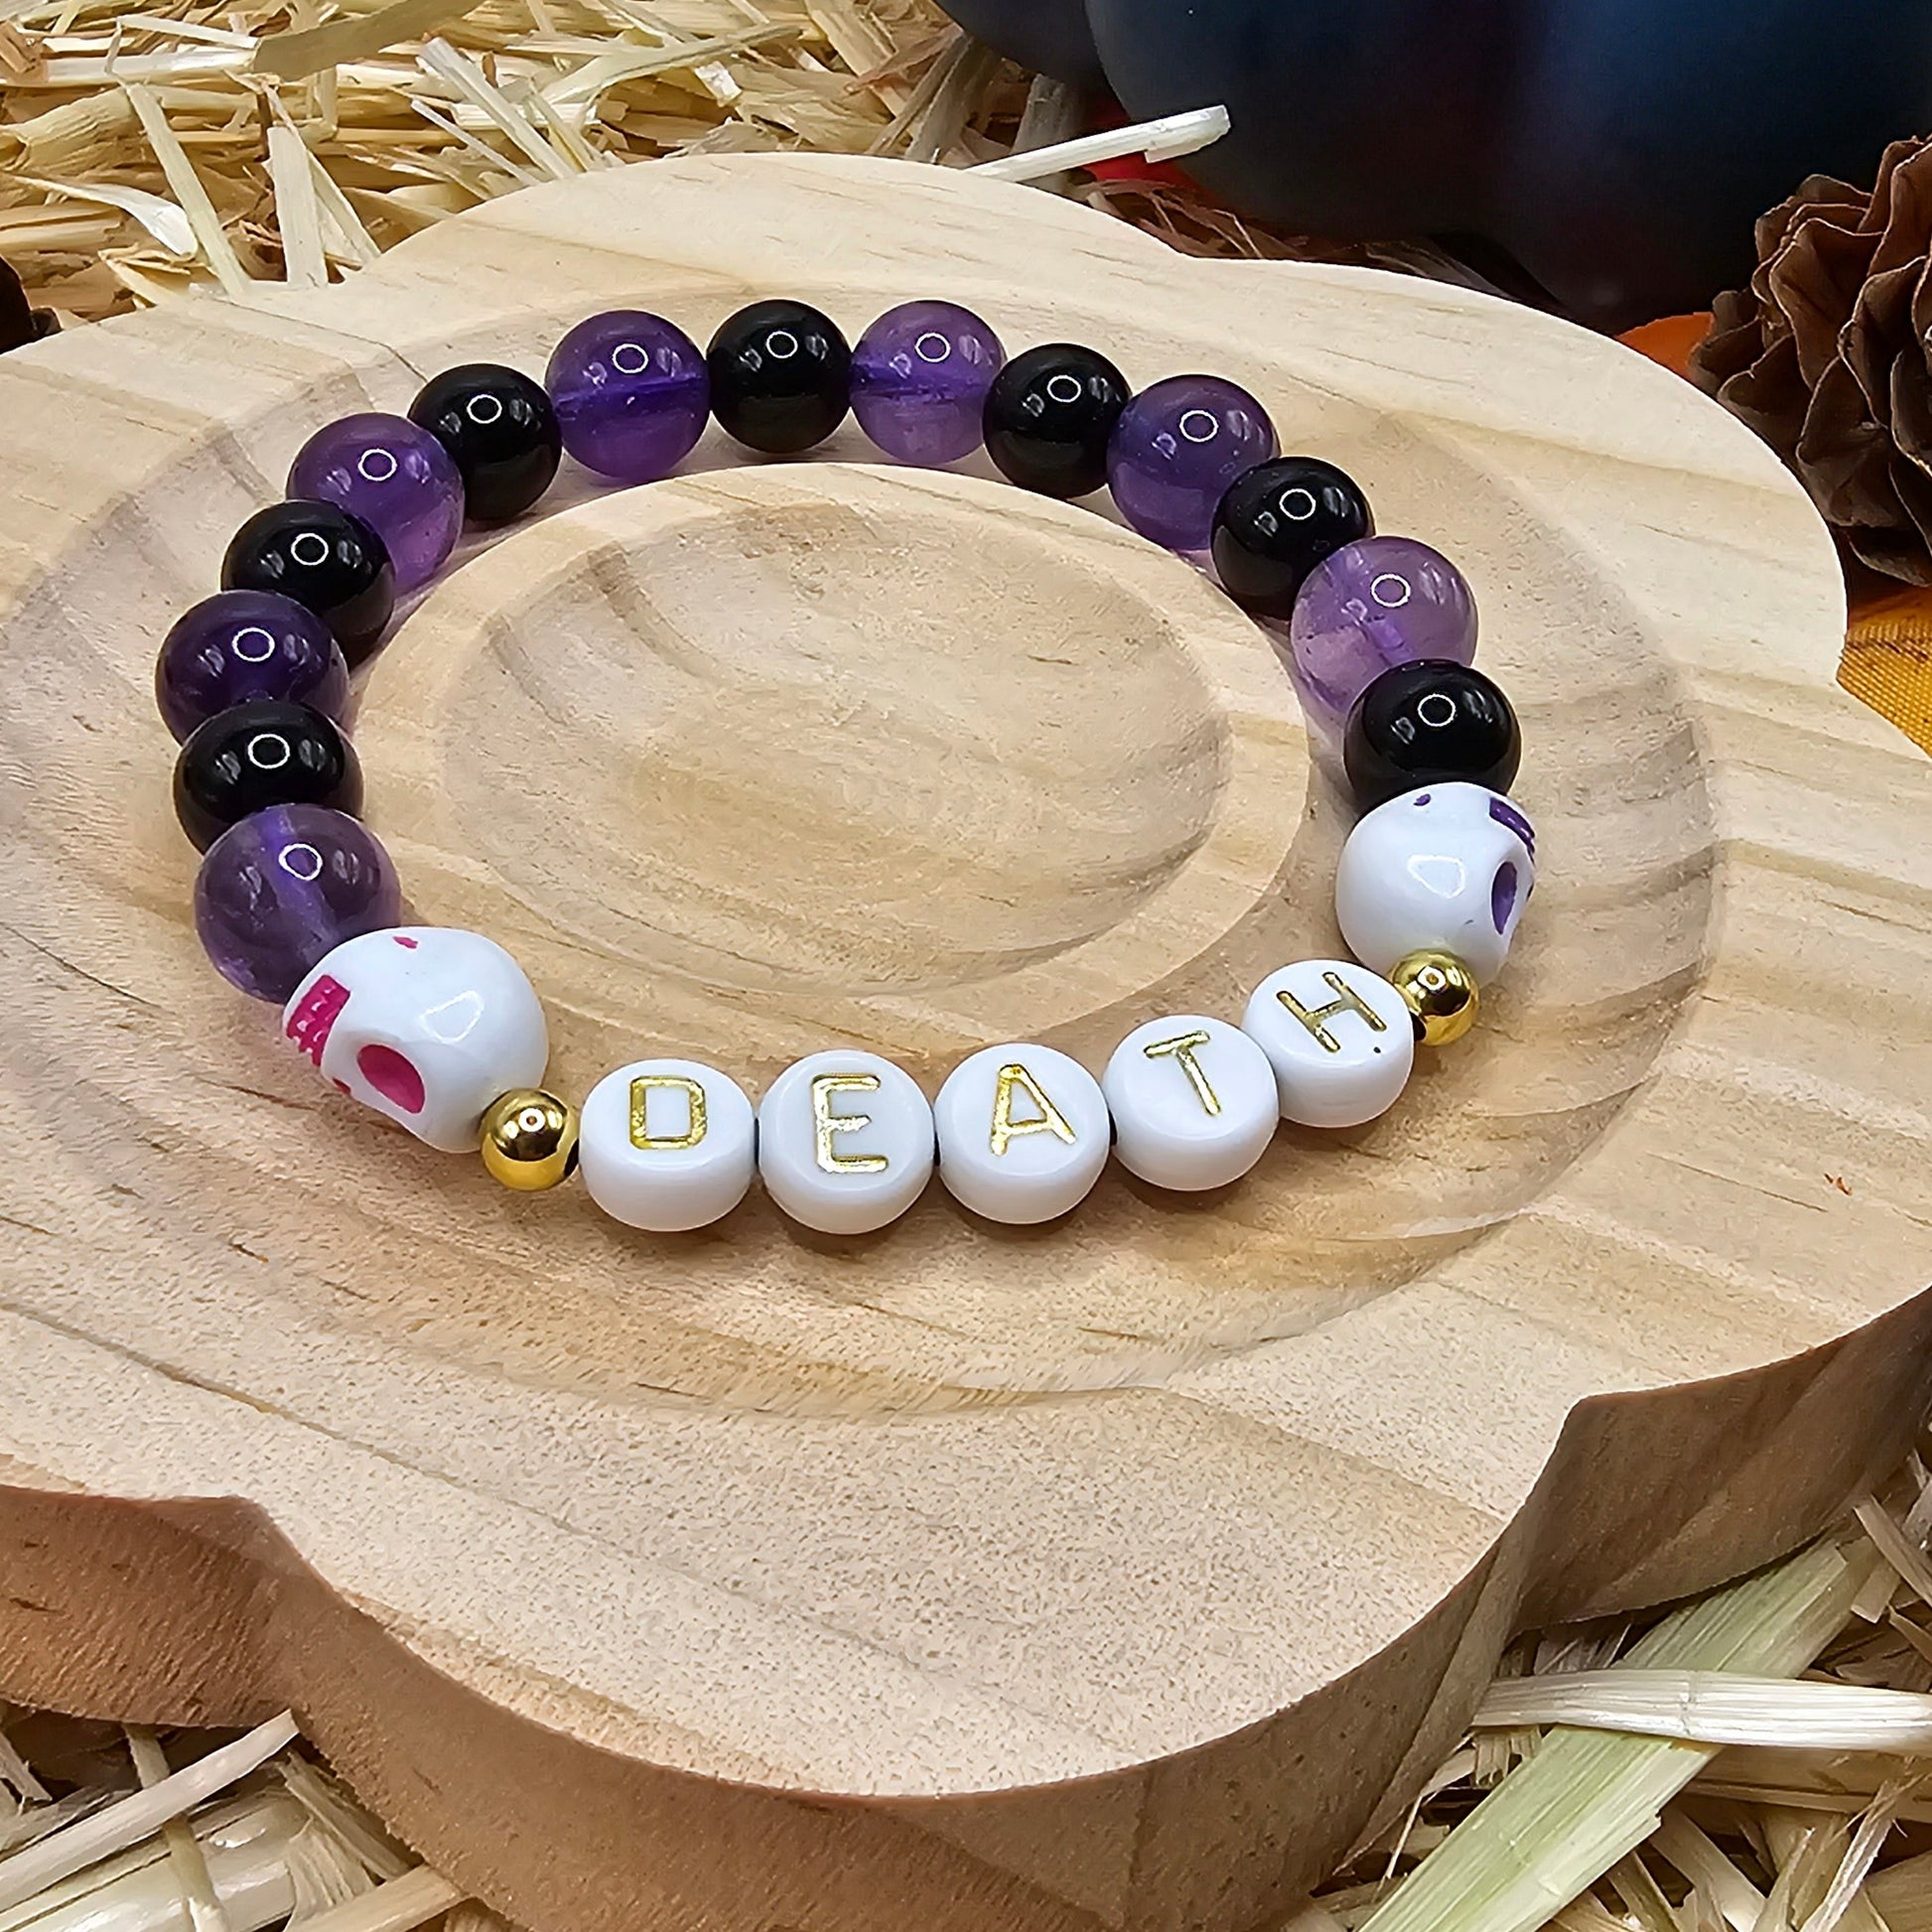 Stretch letter bracelets - alphabet beads. Make custom bracelets